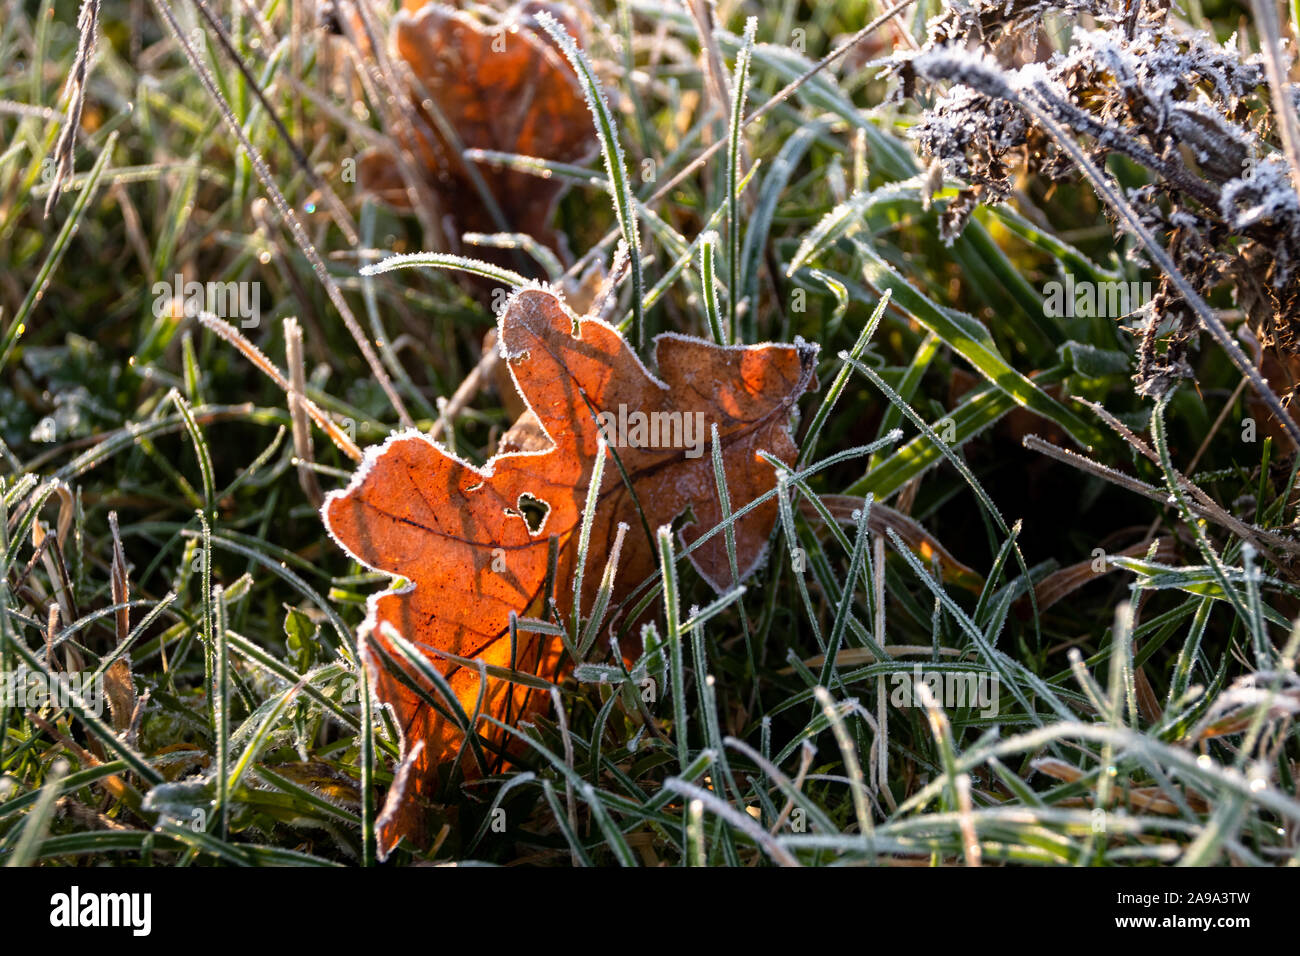 Herbstfarbenes Eichenblatt liegt zwischen gefrorenen Grashalmen Stock Photo